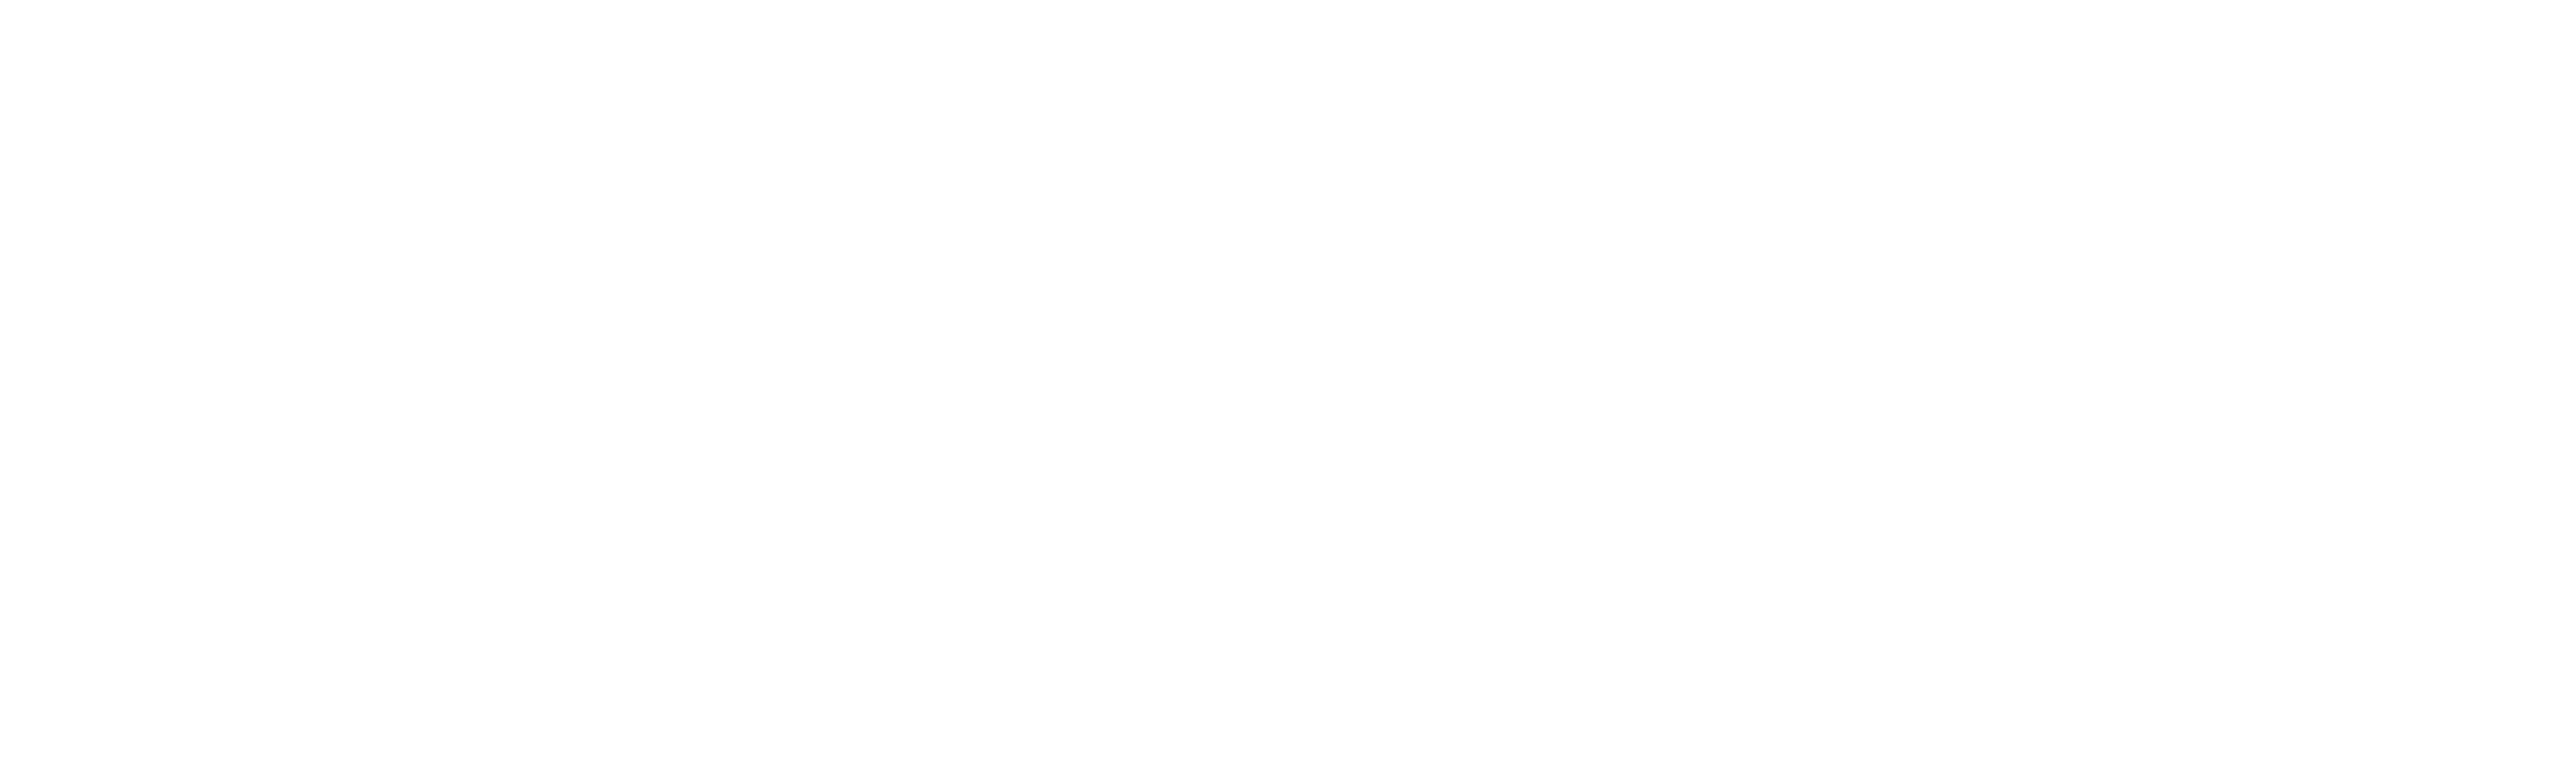 Dortech-Doors-White